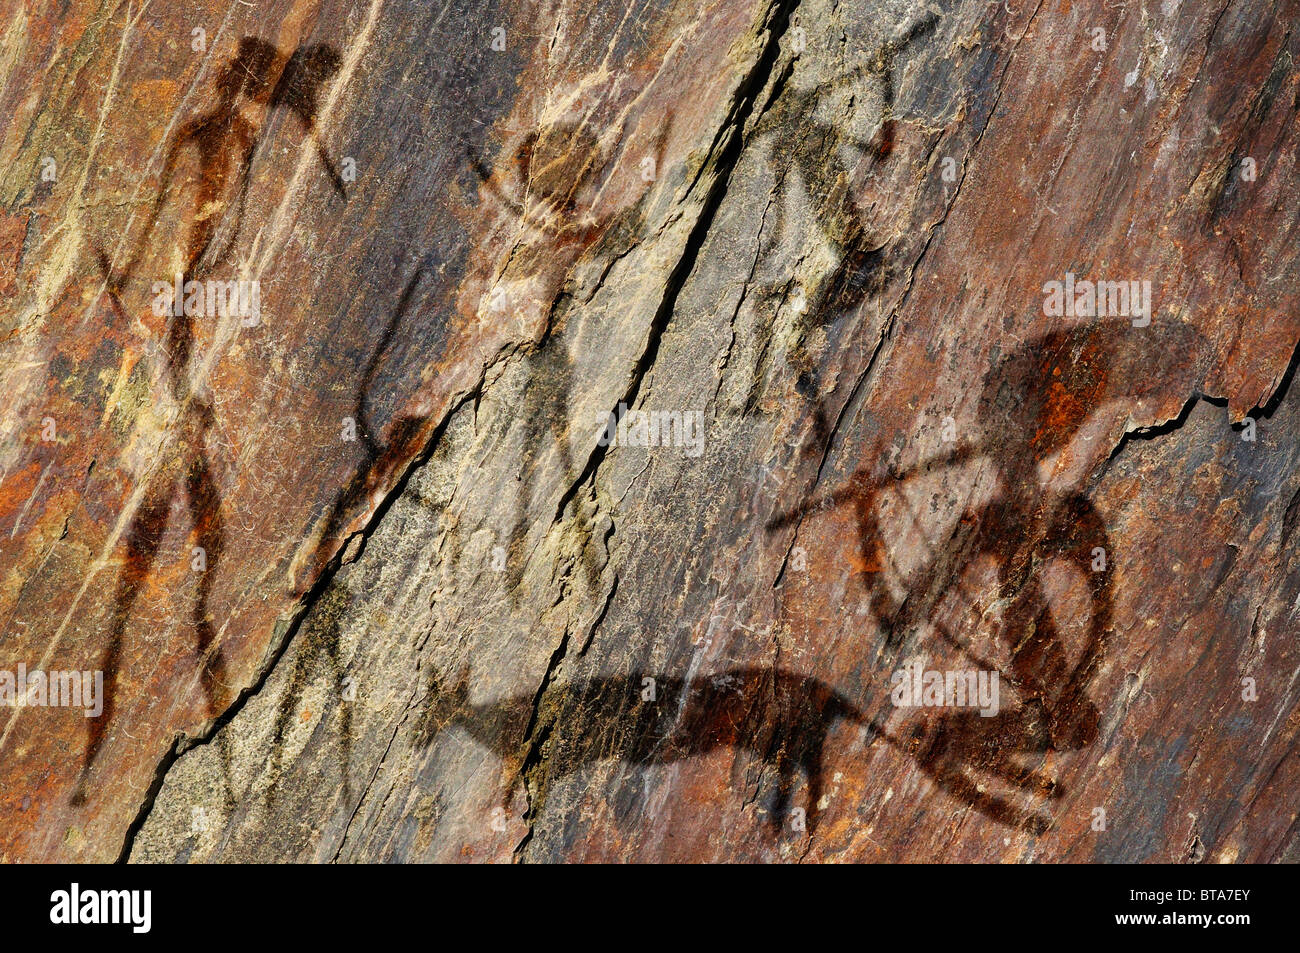 Le figure primitive sulla roccia sembra pittura rupestre Foto Stock